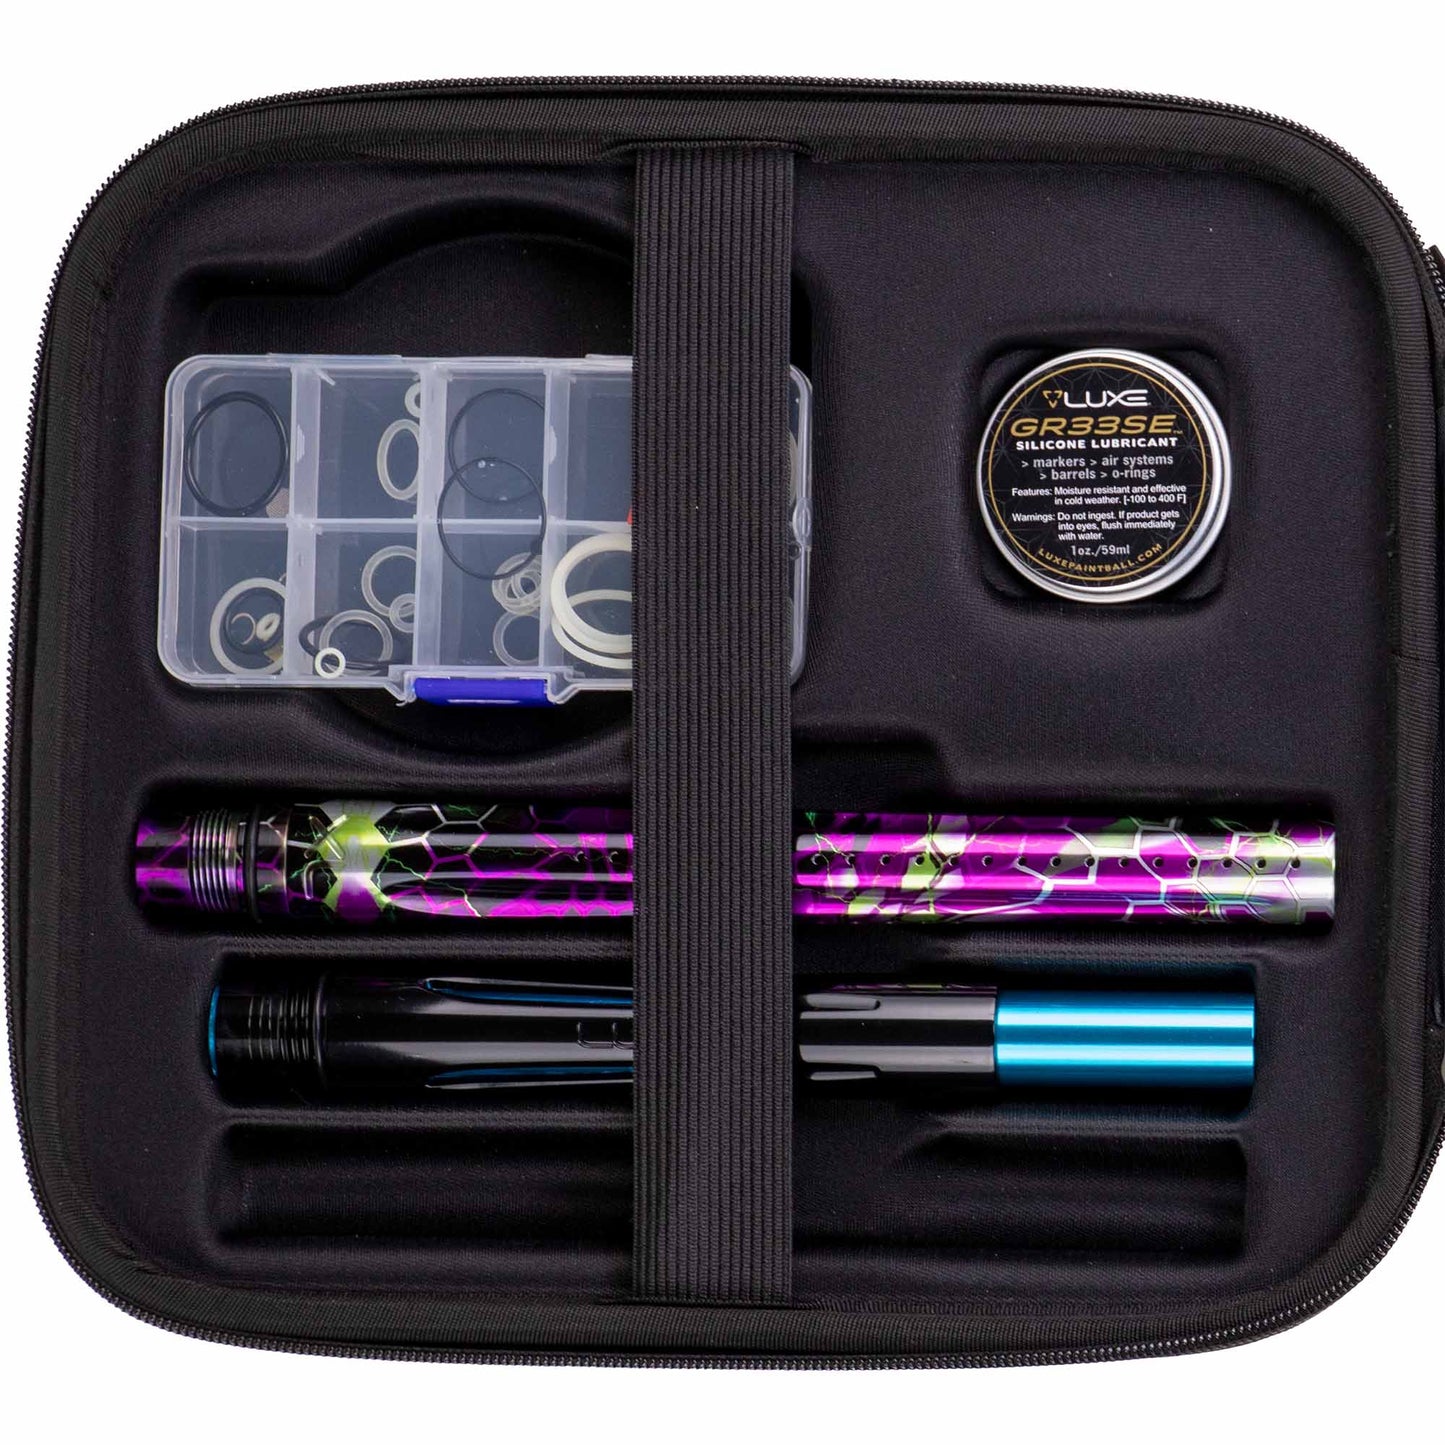 DLX Luxe® TM40 marker, Graphic Wrap - Techno Hex purple